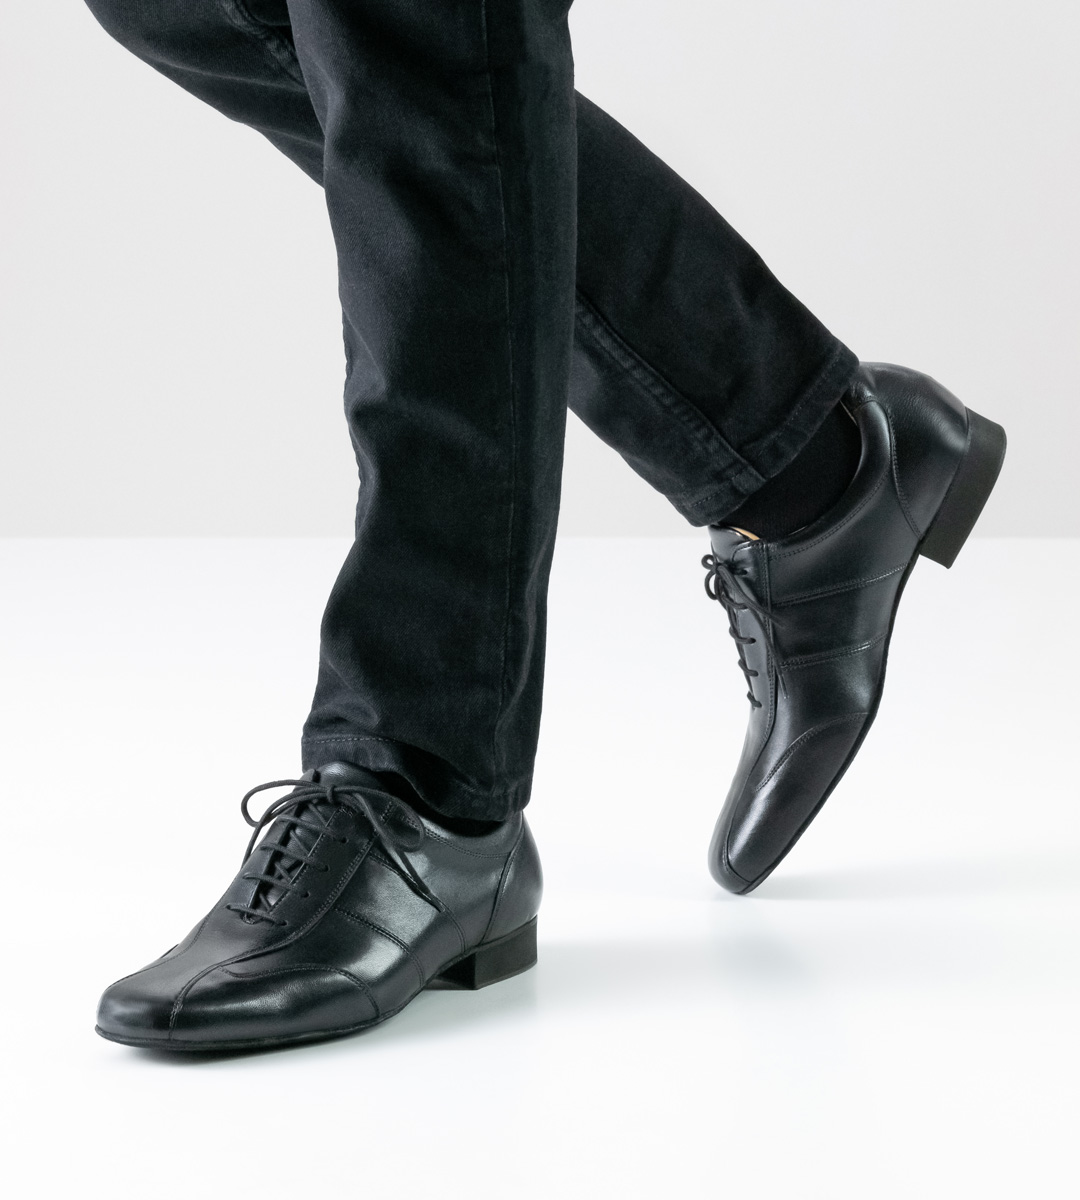 Chaussures de danse pour hommes noires de Werner Kern en combinaison avec un pantalon noir